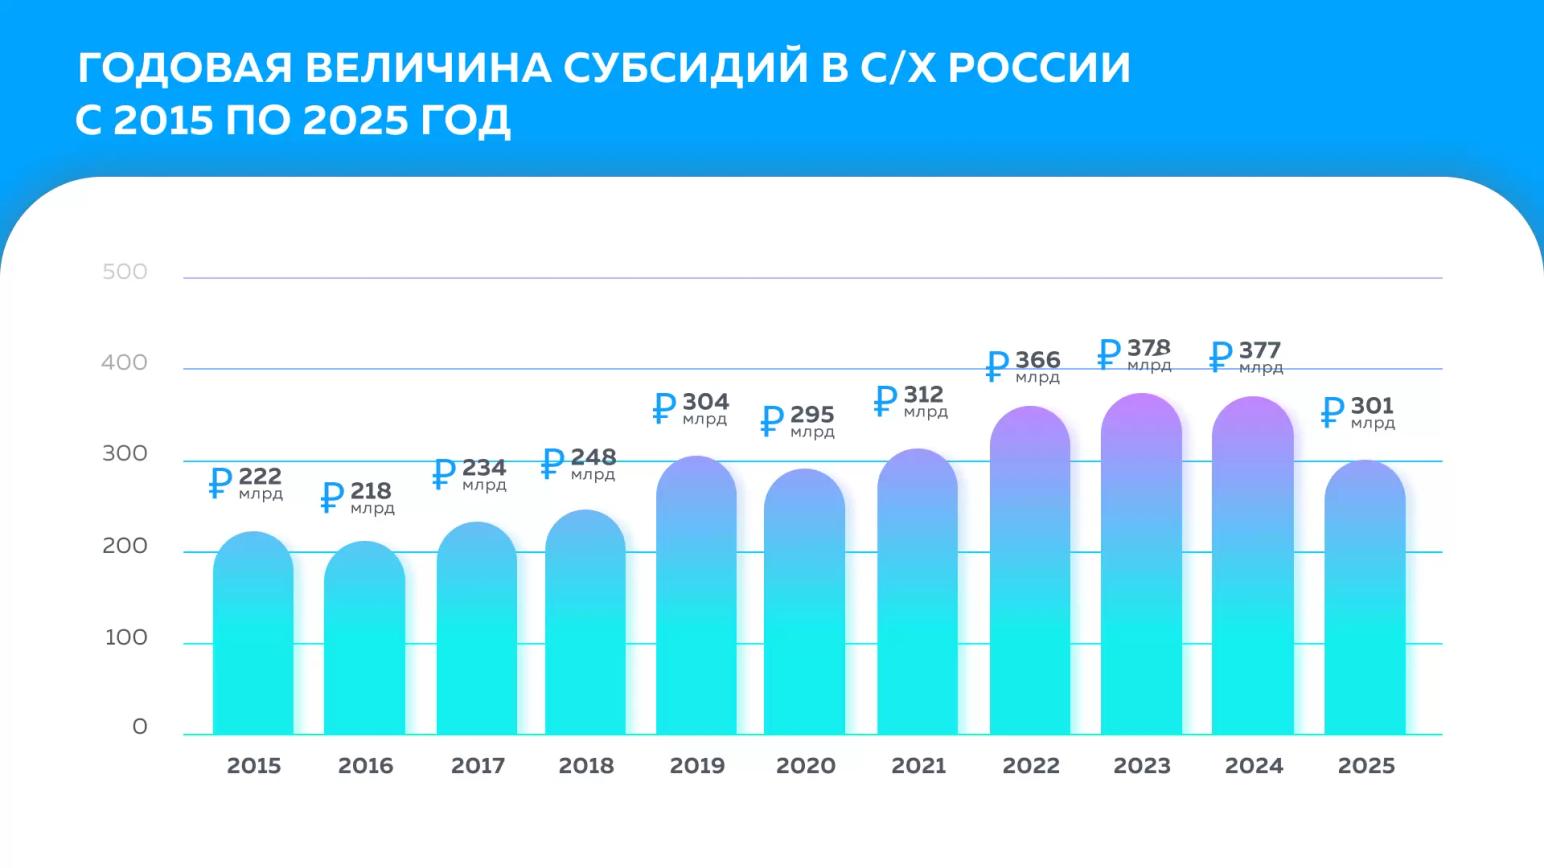 Прогноз субсидирования сельского хозяйства России до 2025 года